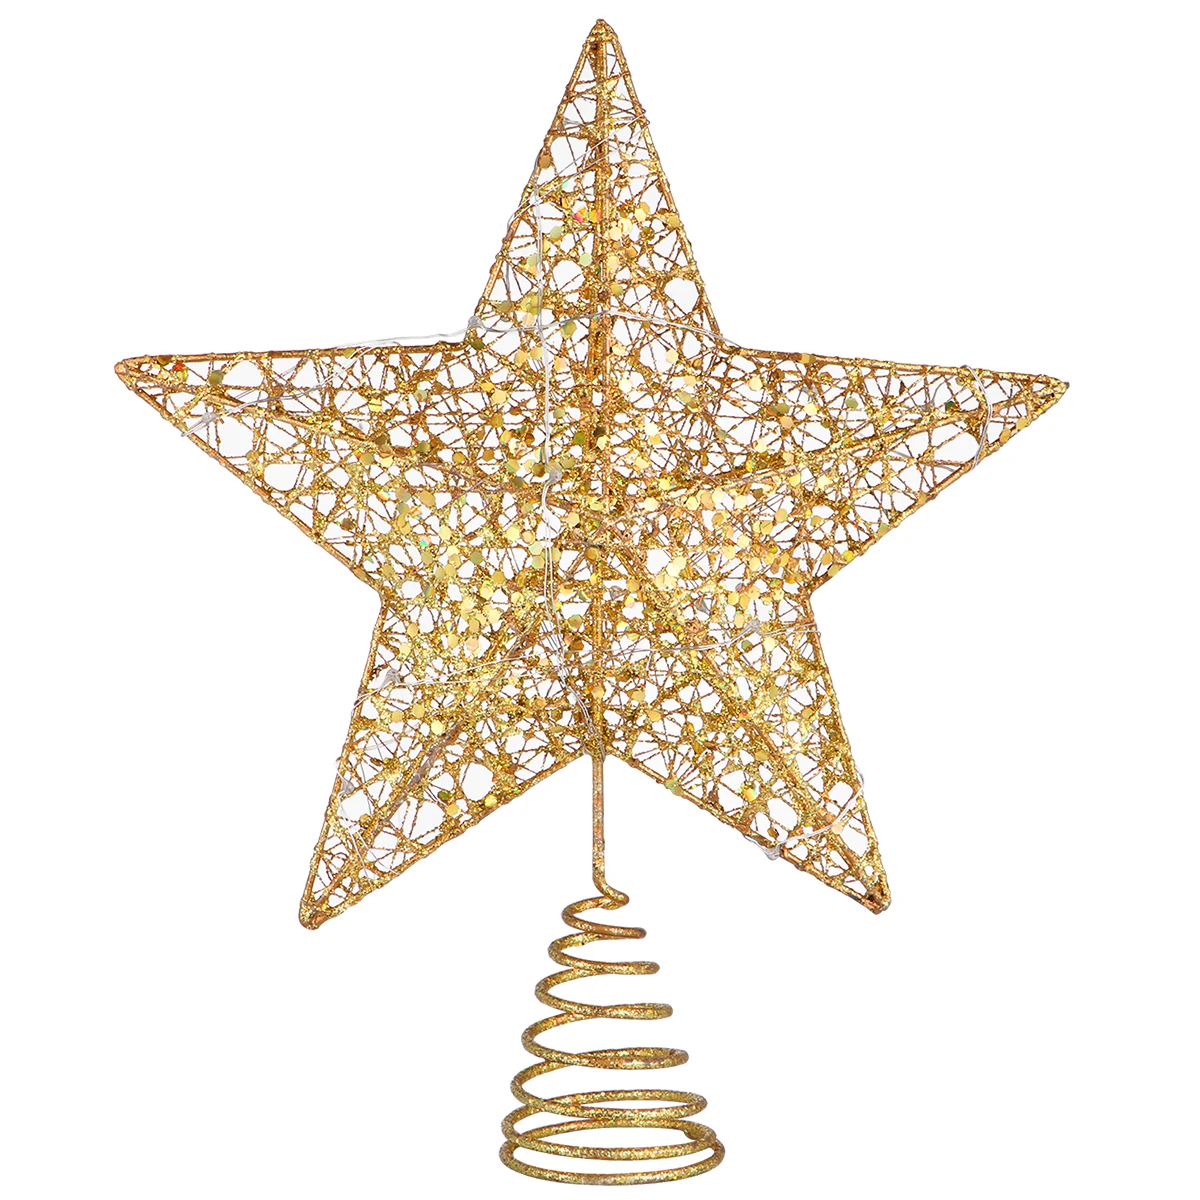 25x30 см с порошковым покрытием красочное освещение рождественнской елки Топпер Рождественский Декор Treetop Star Treetop свет для вечерние дома A30